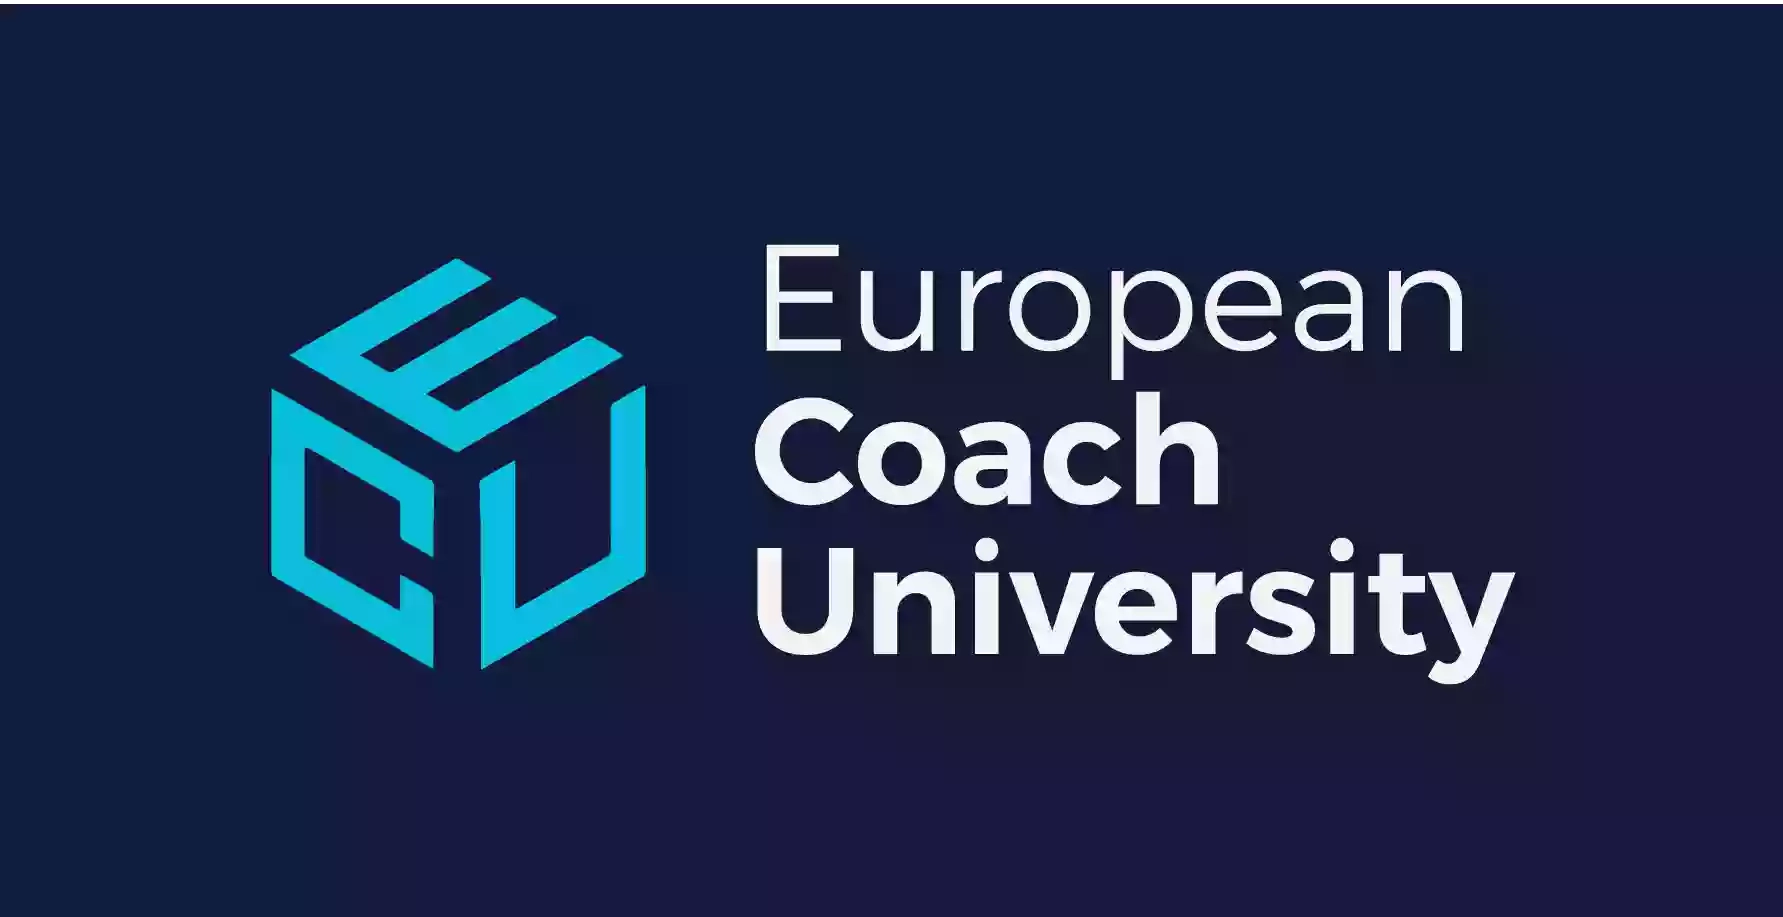 European Coach University